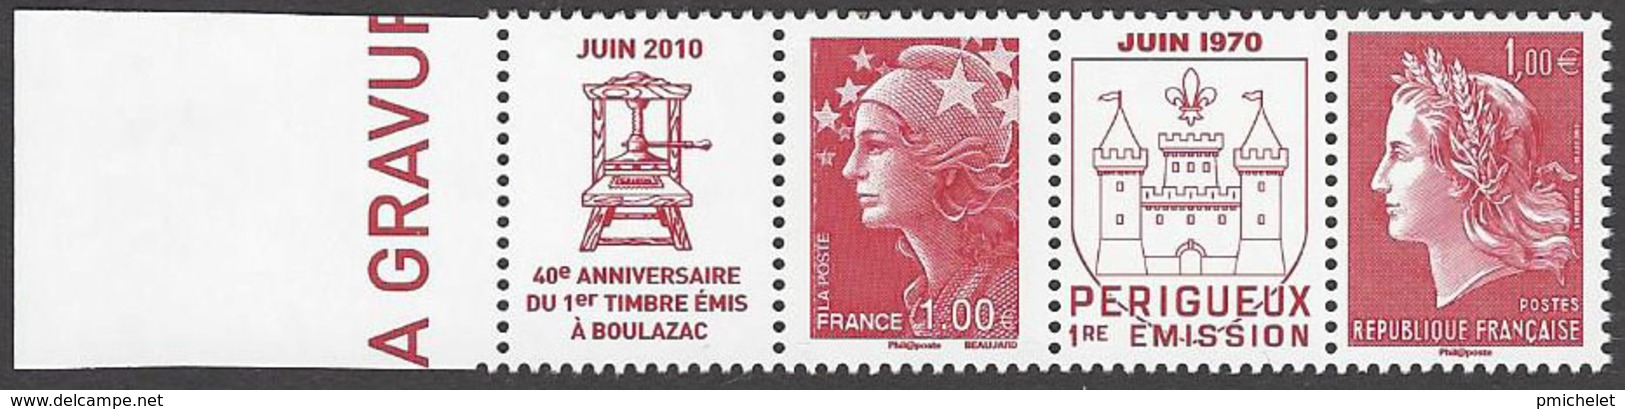 France 2010 - 40eme Anniversaire De BOULAZAC - Impression Taille Douce - Paire YT 4461+4462 - Unused Stamps